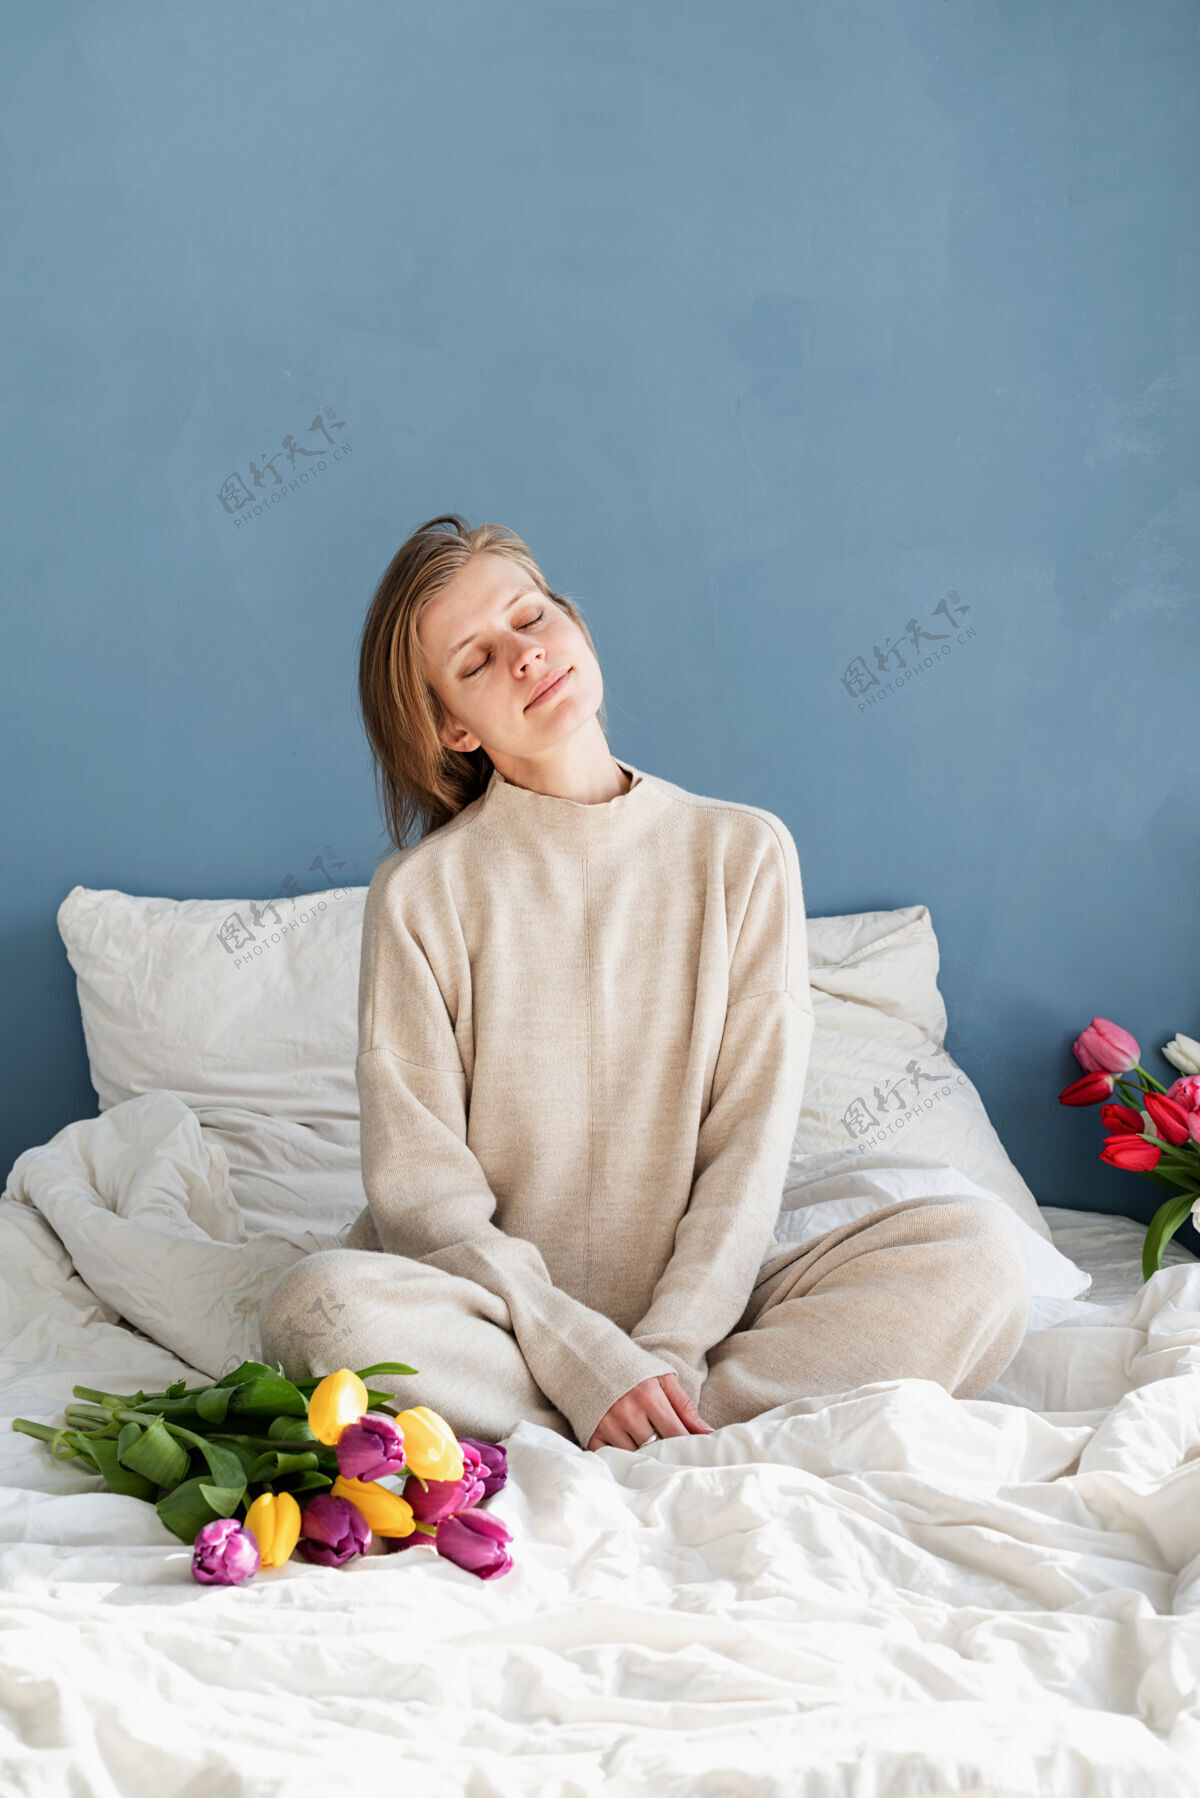 浪漫快乐的女人穿着睡衣坐在床上捧着郁金香花束 背景是蓝色的墙壁生活方式美丽节日